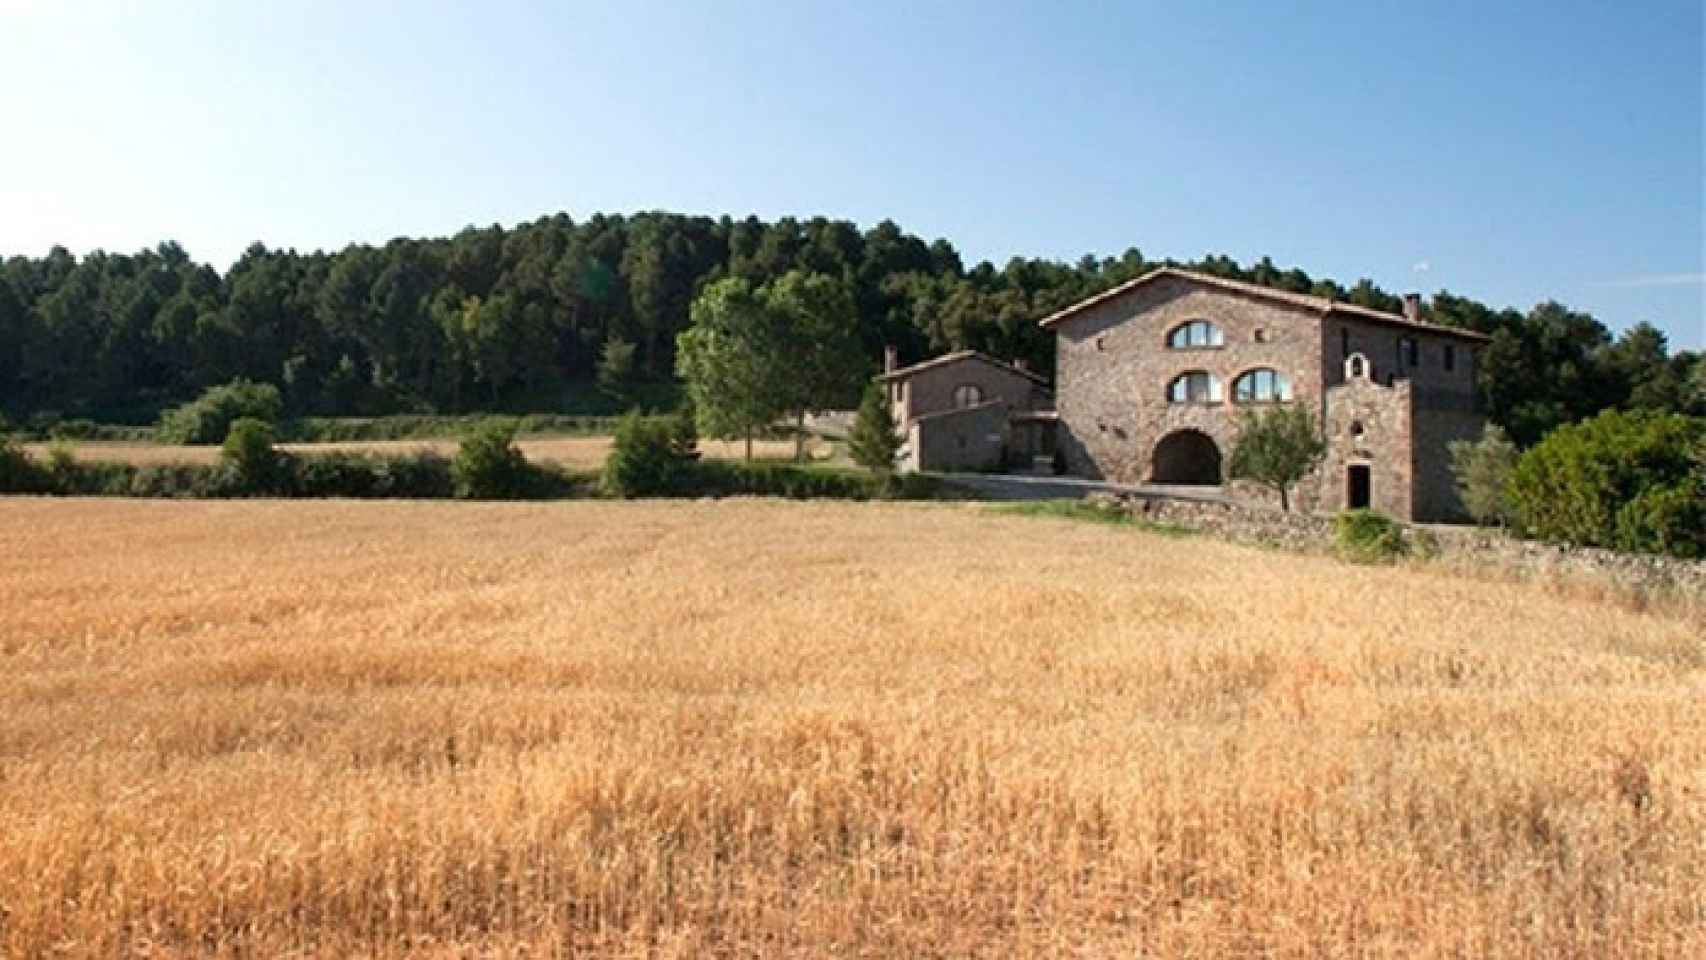 Aumenta el turismo rural en Castilla y León